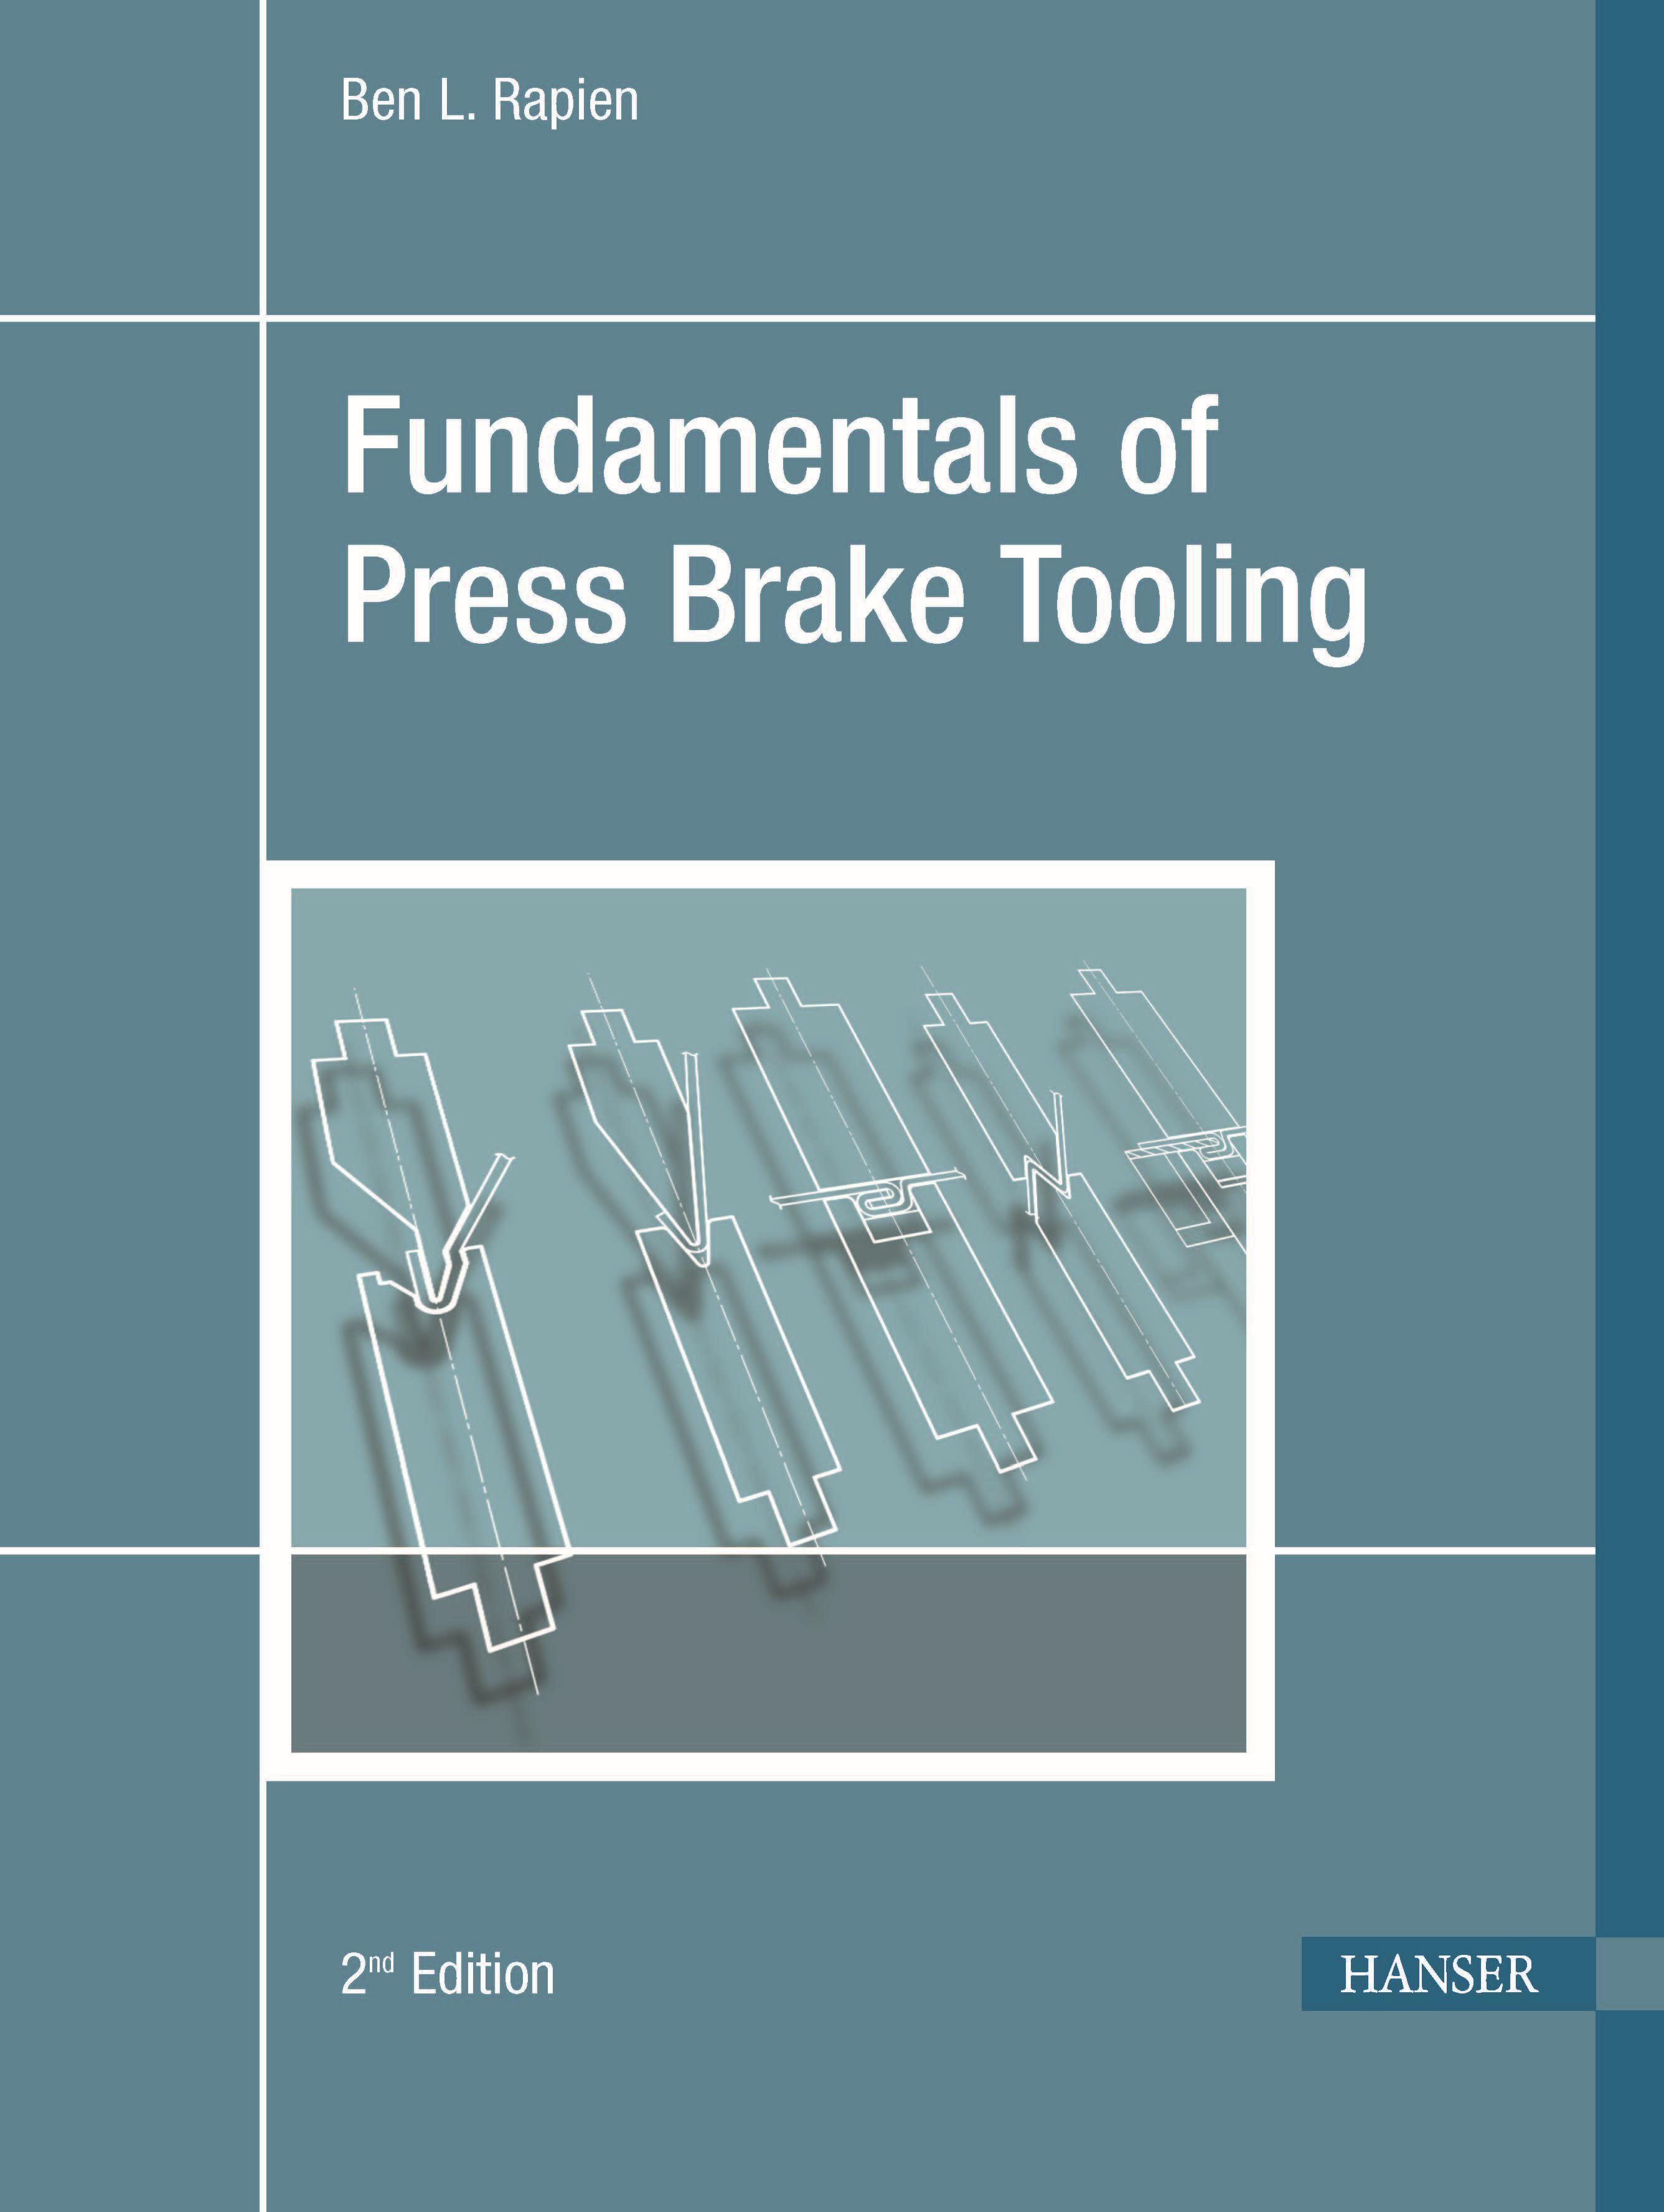 Fundamentals of Press Brake Tooling 2e / Ben L. Rapien / Buch / Englisch / 2010 / HANSER PUBN / EAN 9781569904749 - Rapien, Ben L.